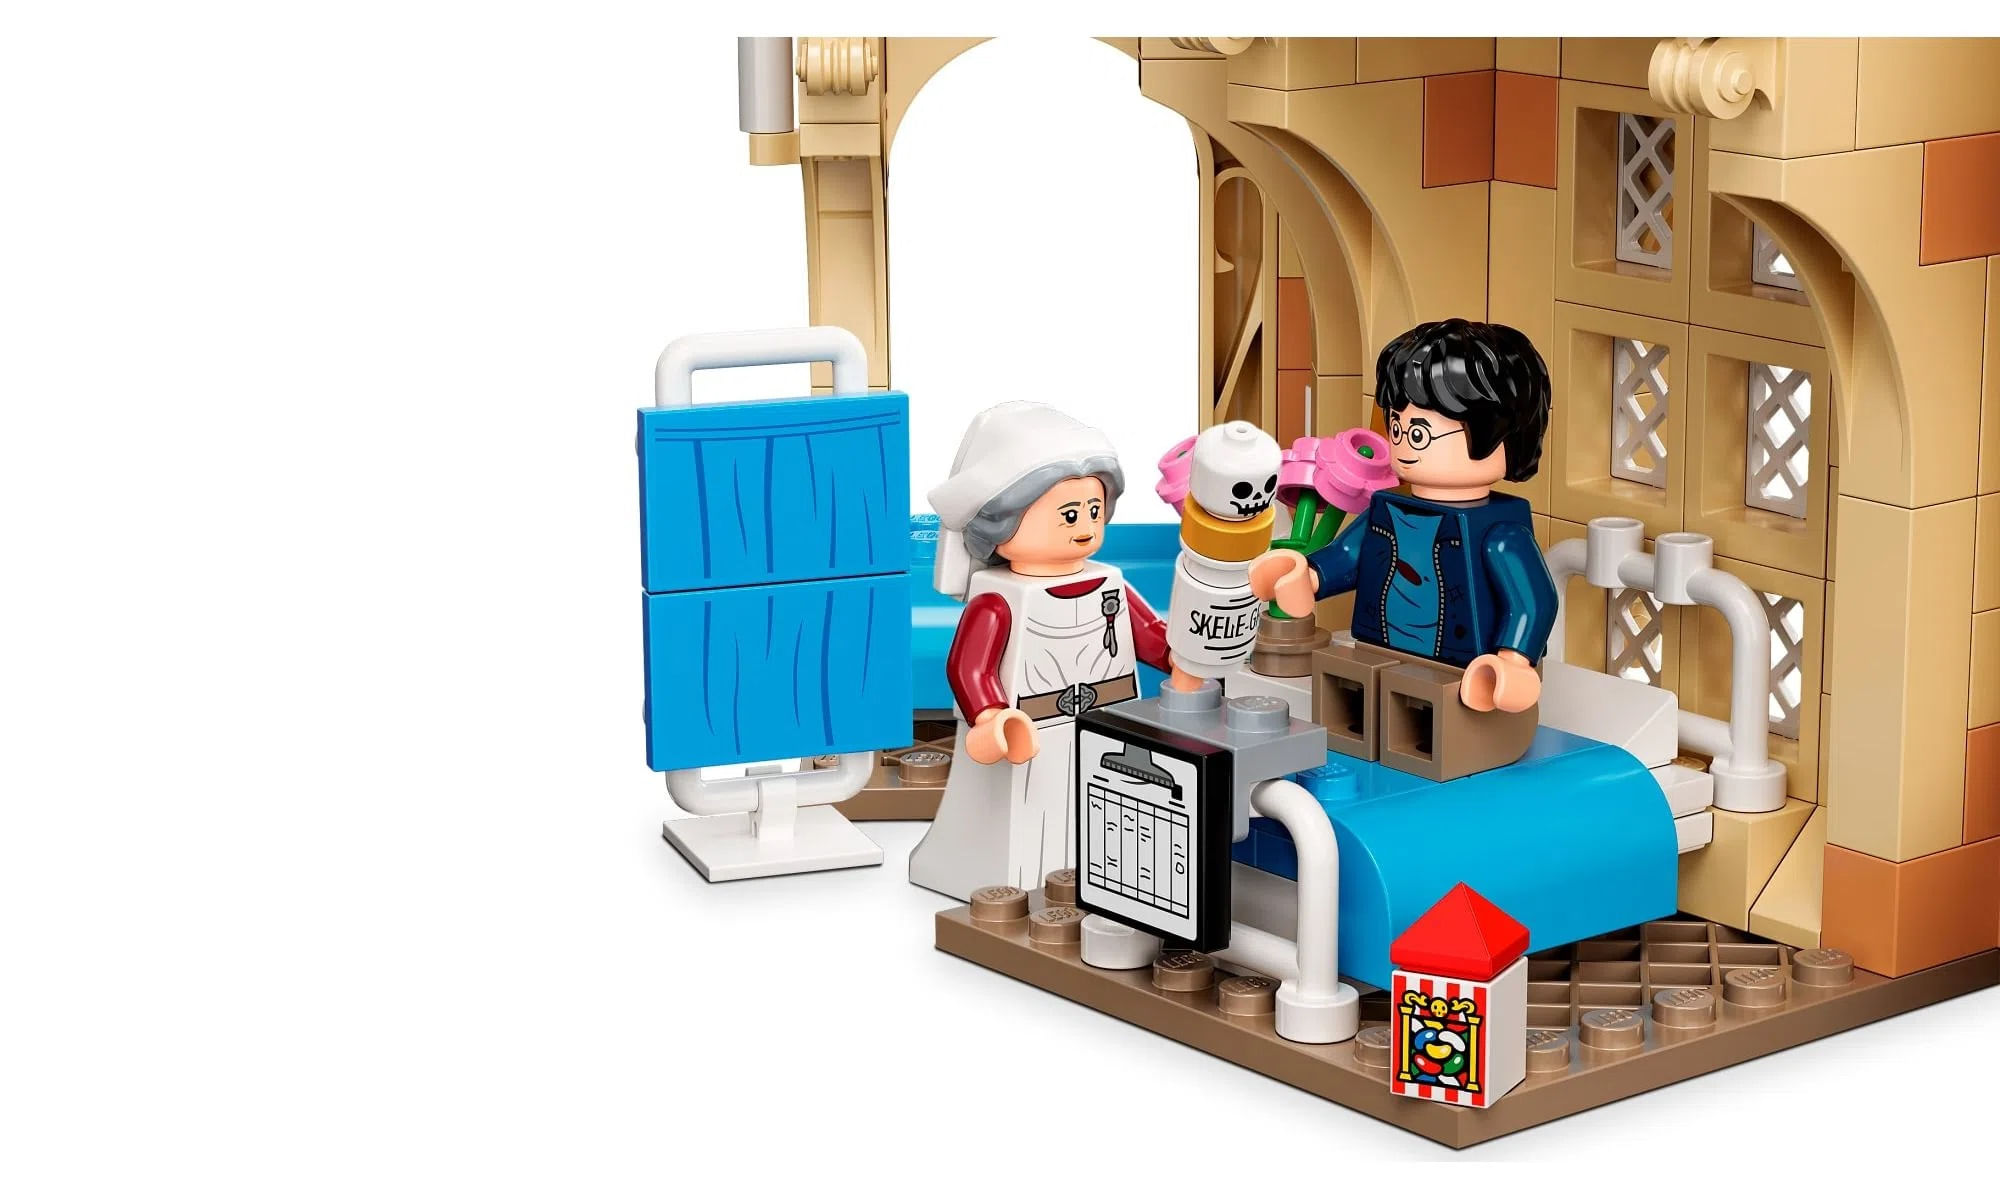 Lego Harry Potter Xadrez Dos Feiticeiros De Hogwarts - Brinquedos